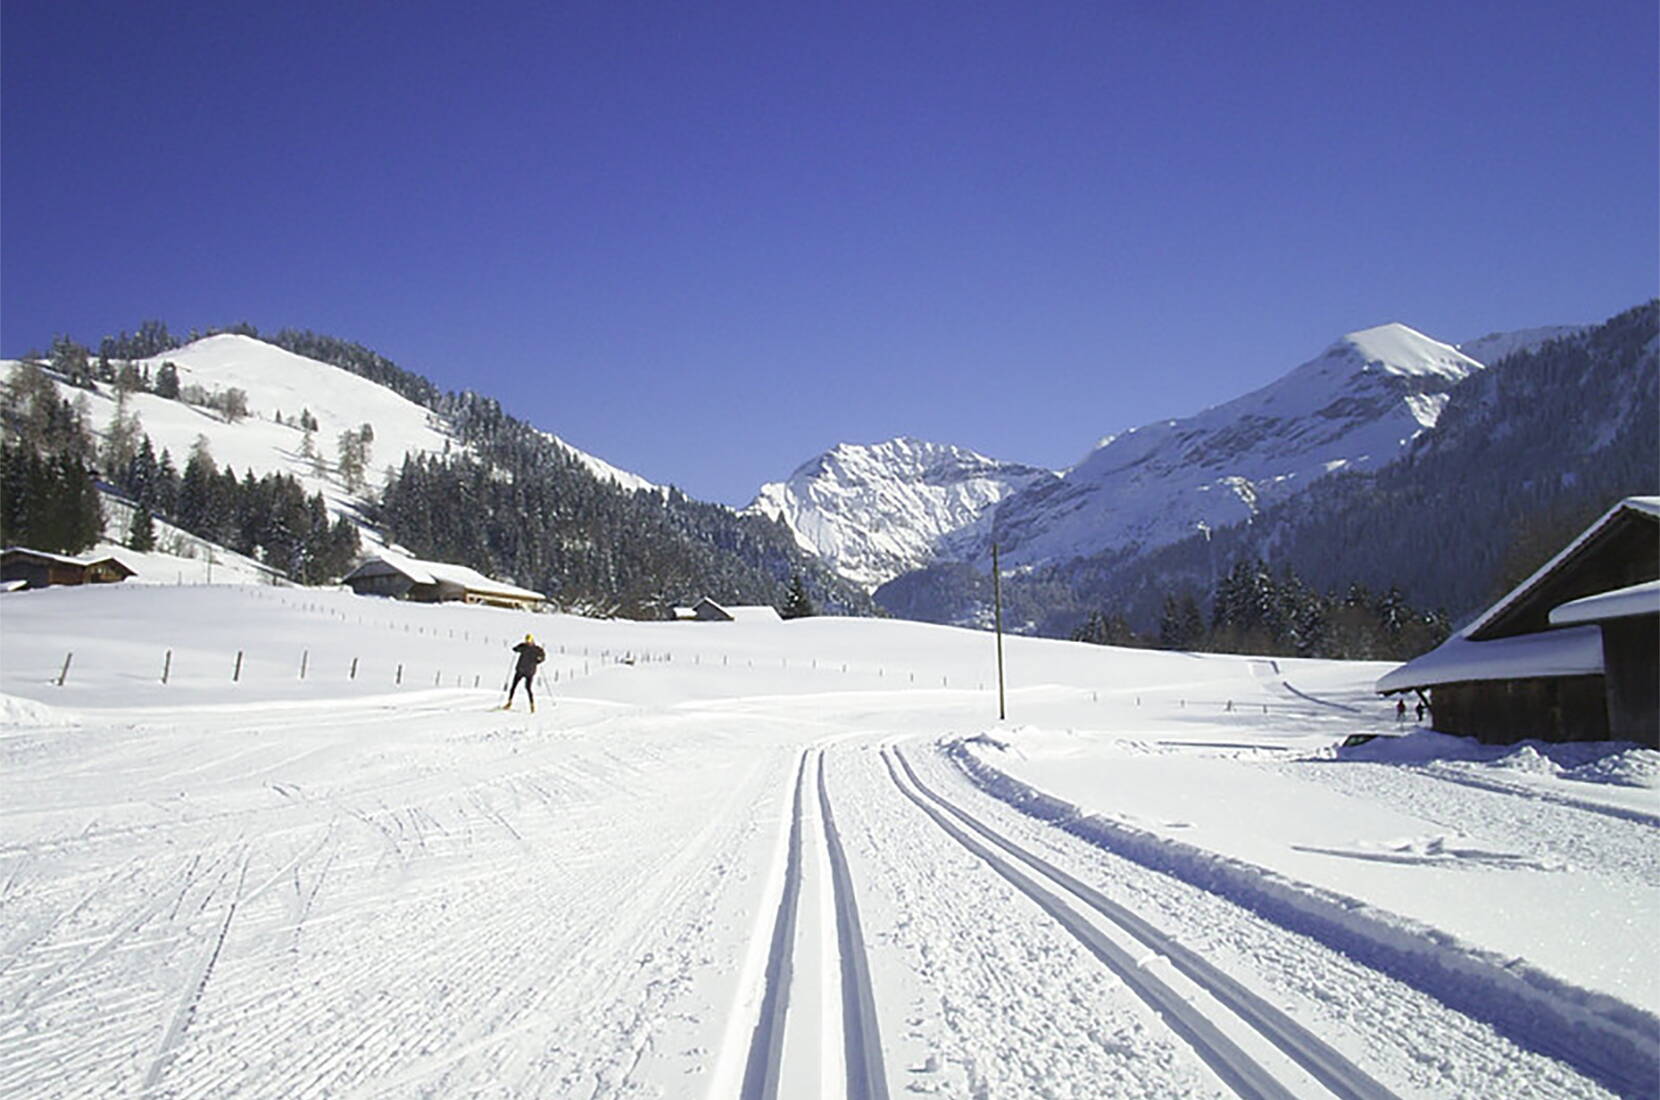 Excursion familiale en ski de fond à Aeschi. Débutants, avancés et spécialistes ont à leur disposition 35 km de pistes de ski de fond classiques et 32 km de pistes de skating d'Aeschi à Suldtal en passant par Aeschiried, ainsi que 2 km de pistes de nuit à Aeschiried.